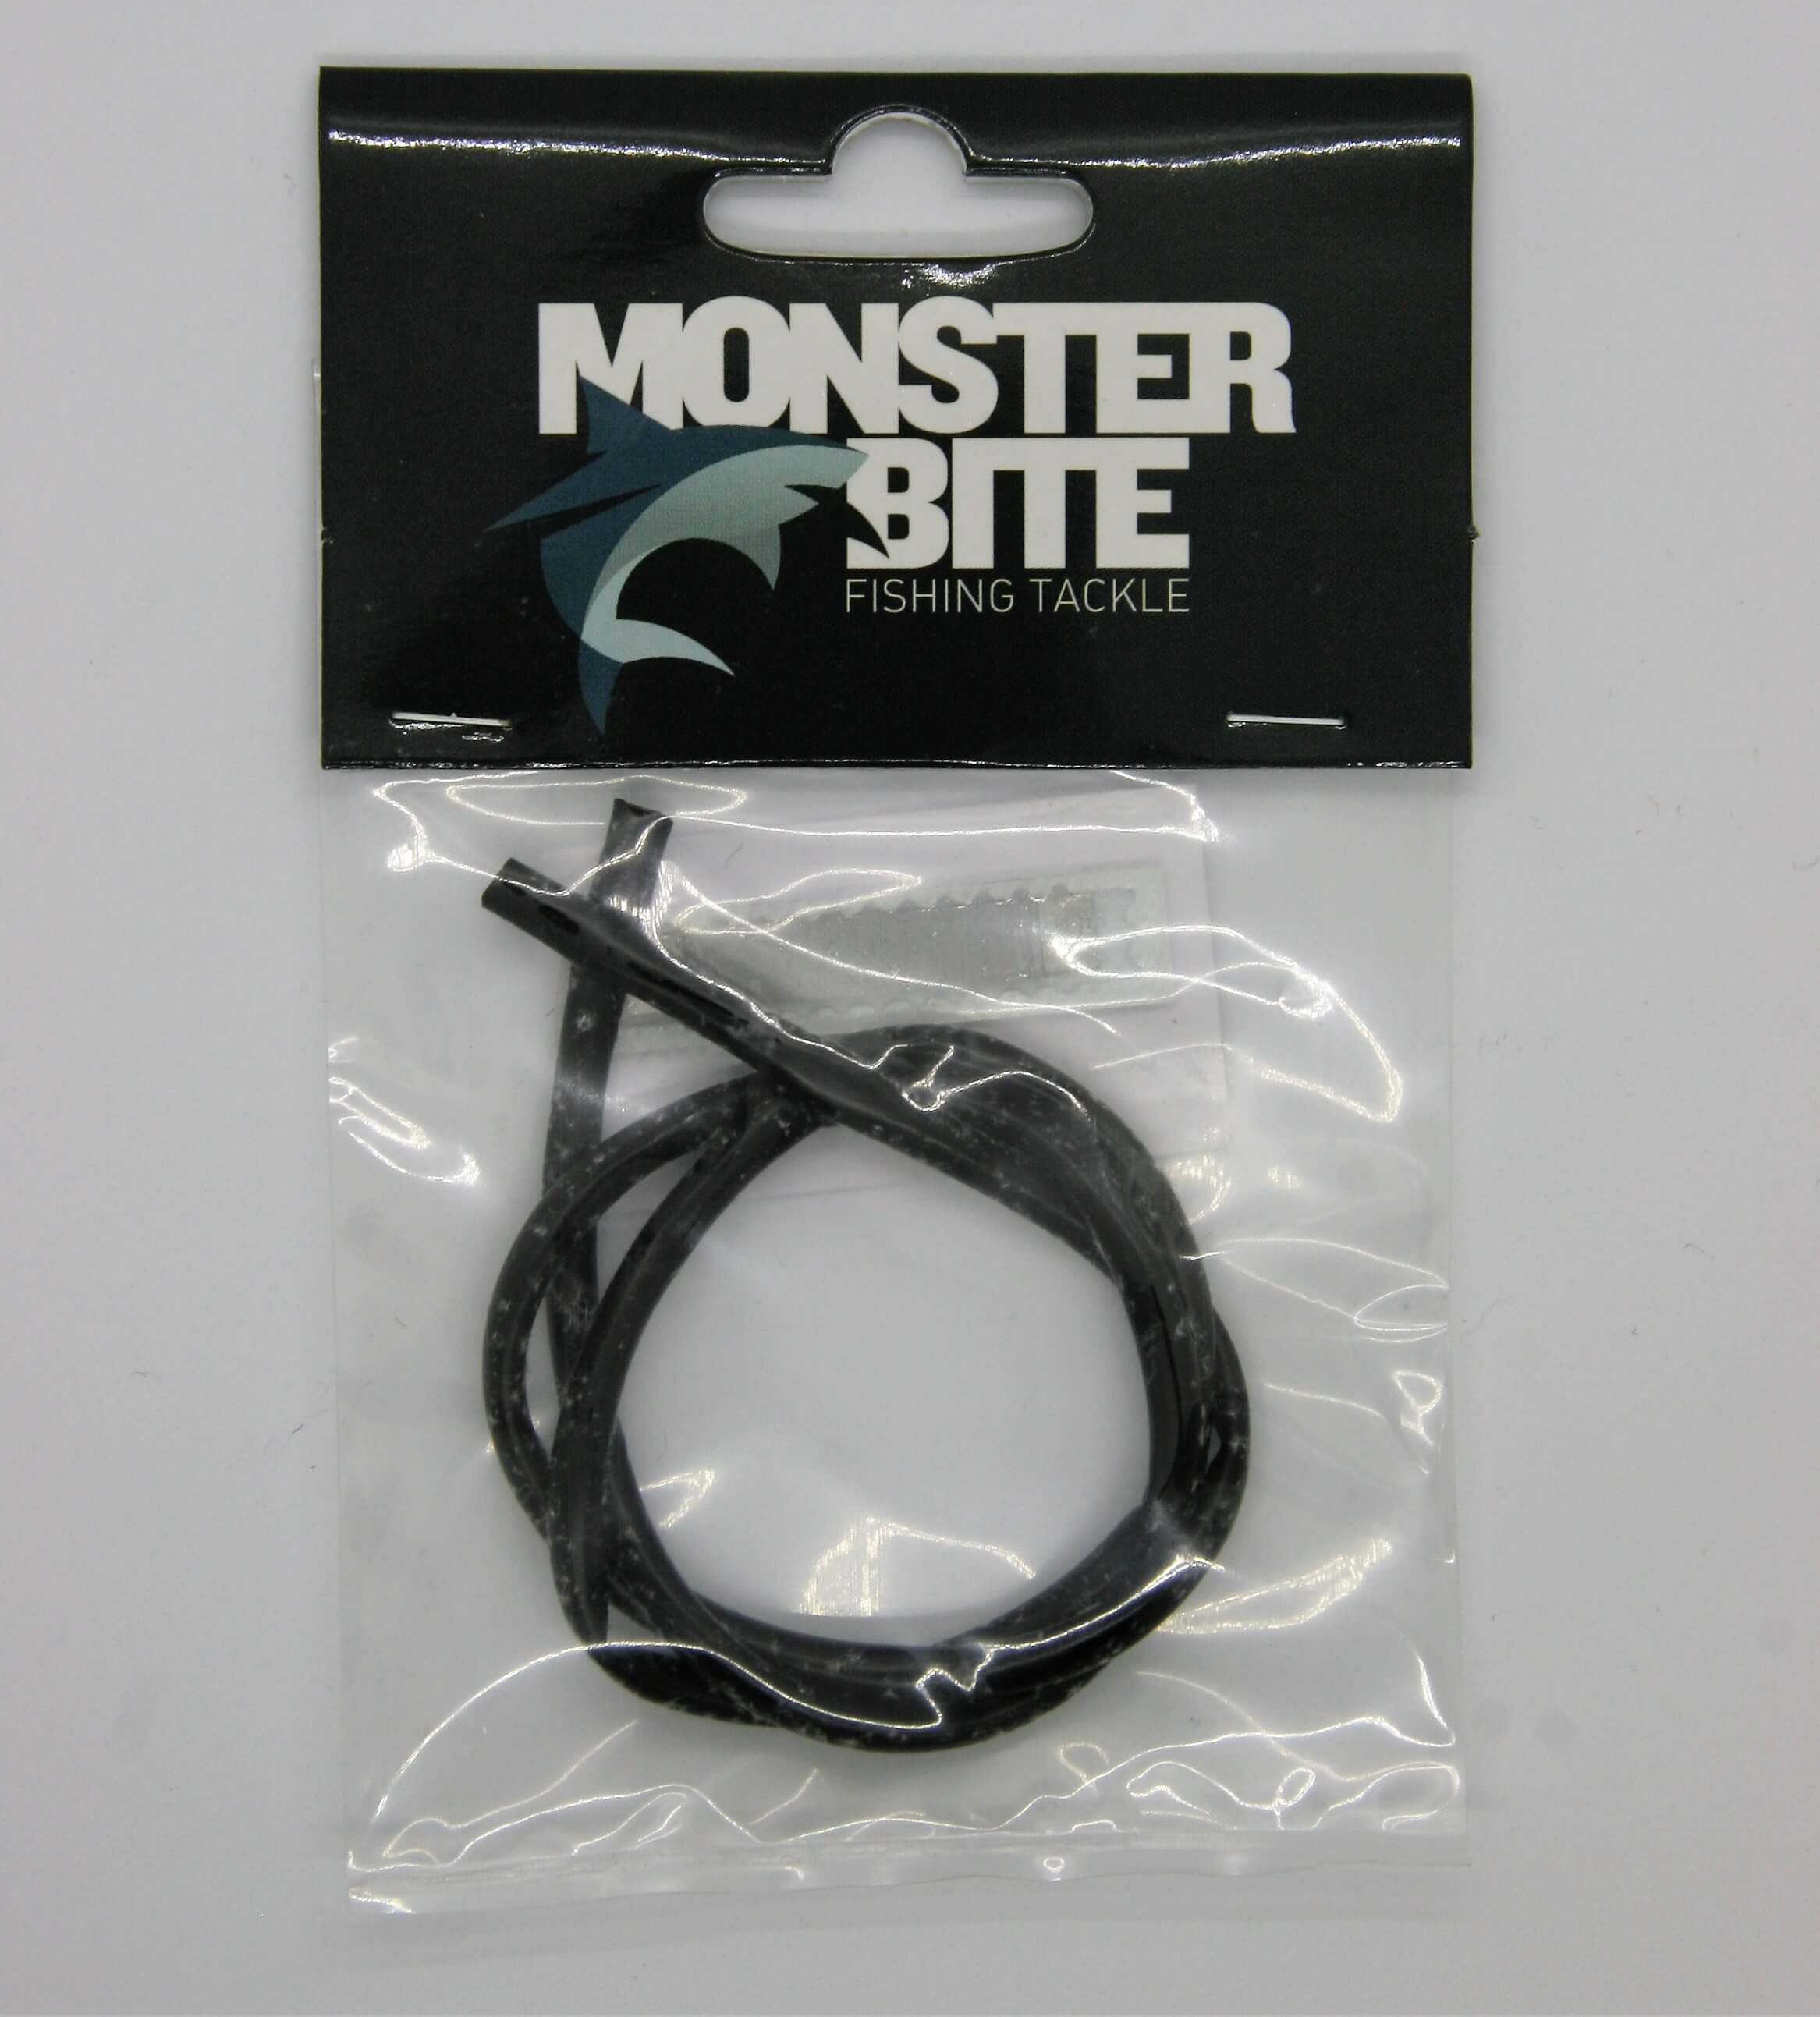 Black monster tube